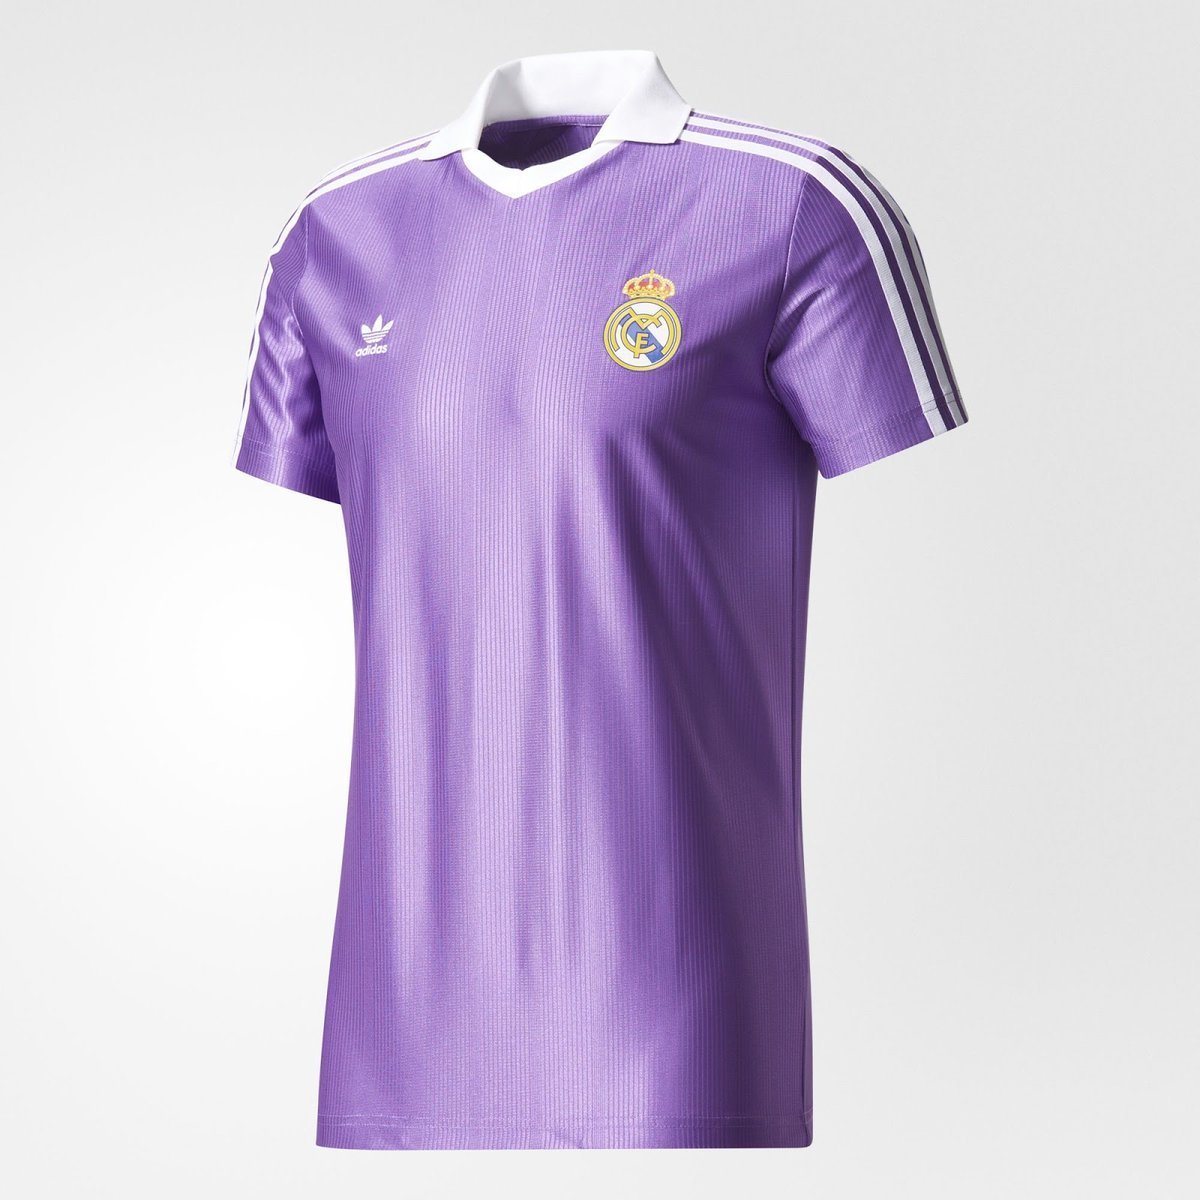 La camiseta vintage del Real Madrid que está haciendo furor entre los madridistas